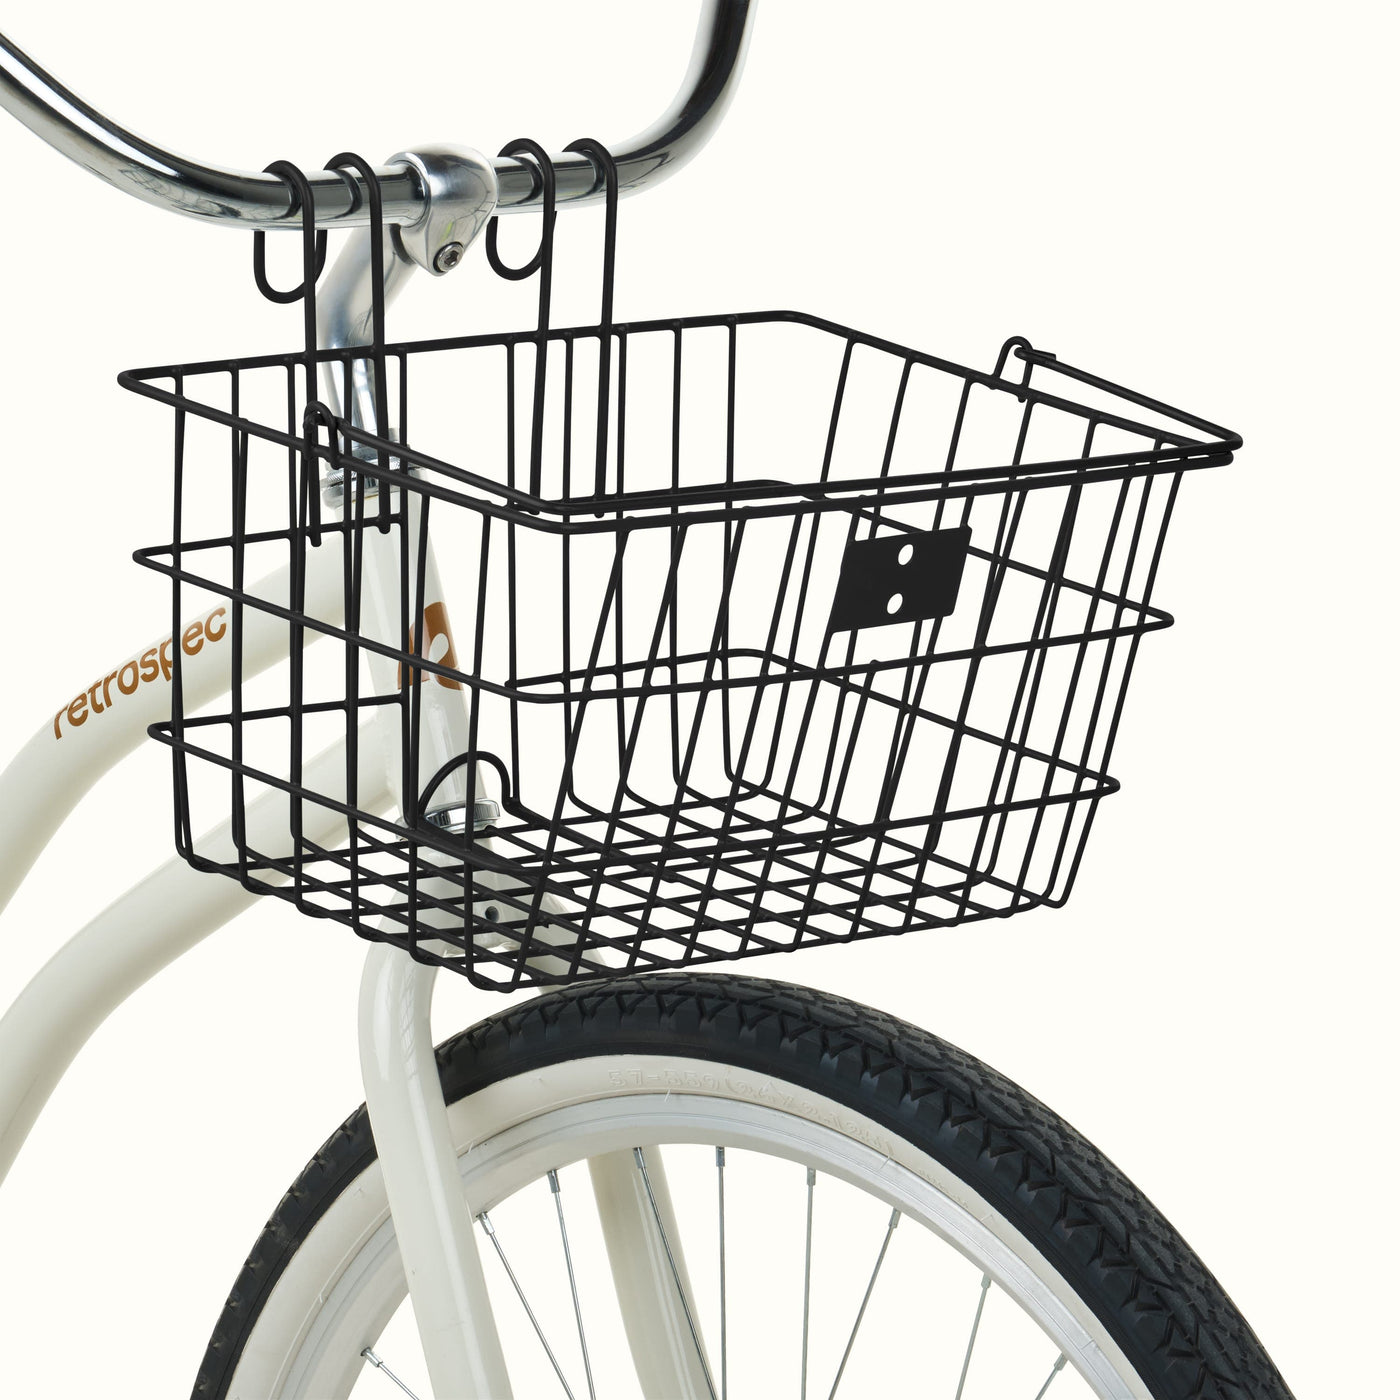 Apollo-Lite Bike Basket | Black (Legacy)